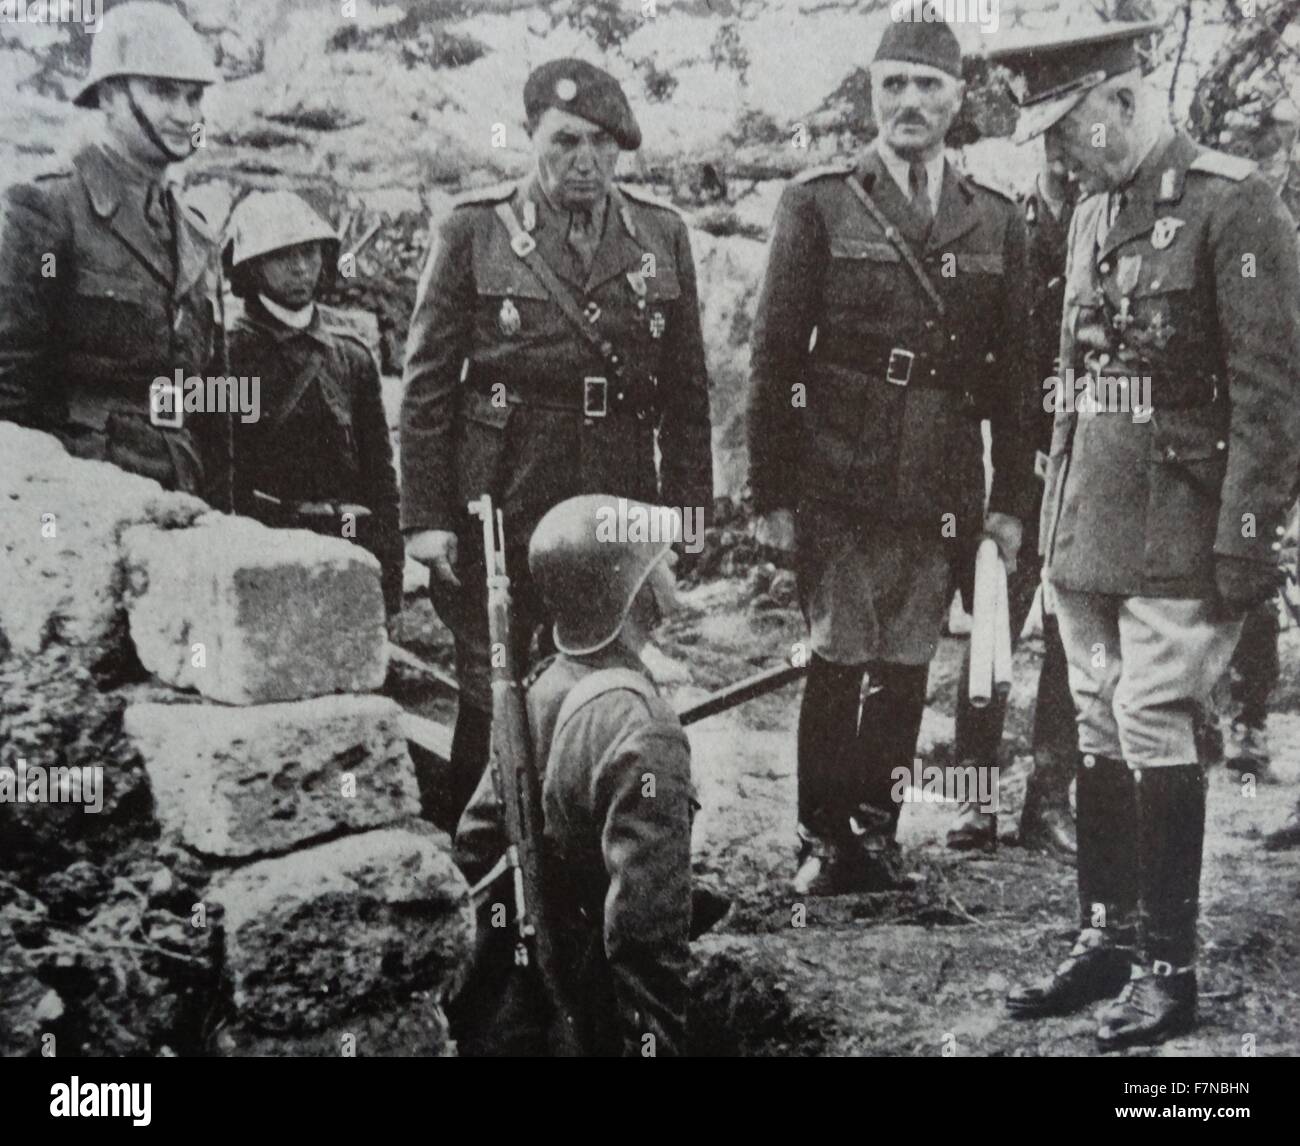 Foto von der rumänischen Premiere, Marschall Antonescu, Inspektion einer rumänischen Position in der Krim-Kampfzone. Datiert 1940 Stockfoto